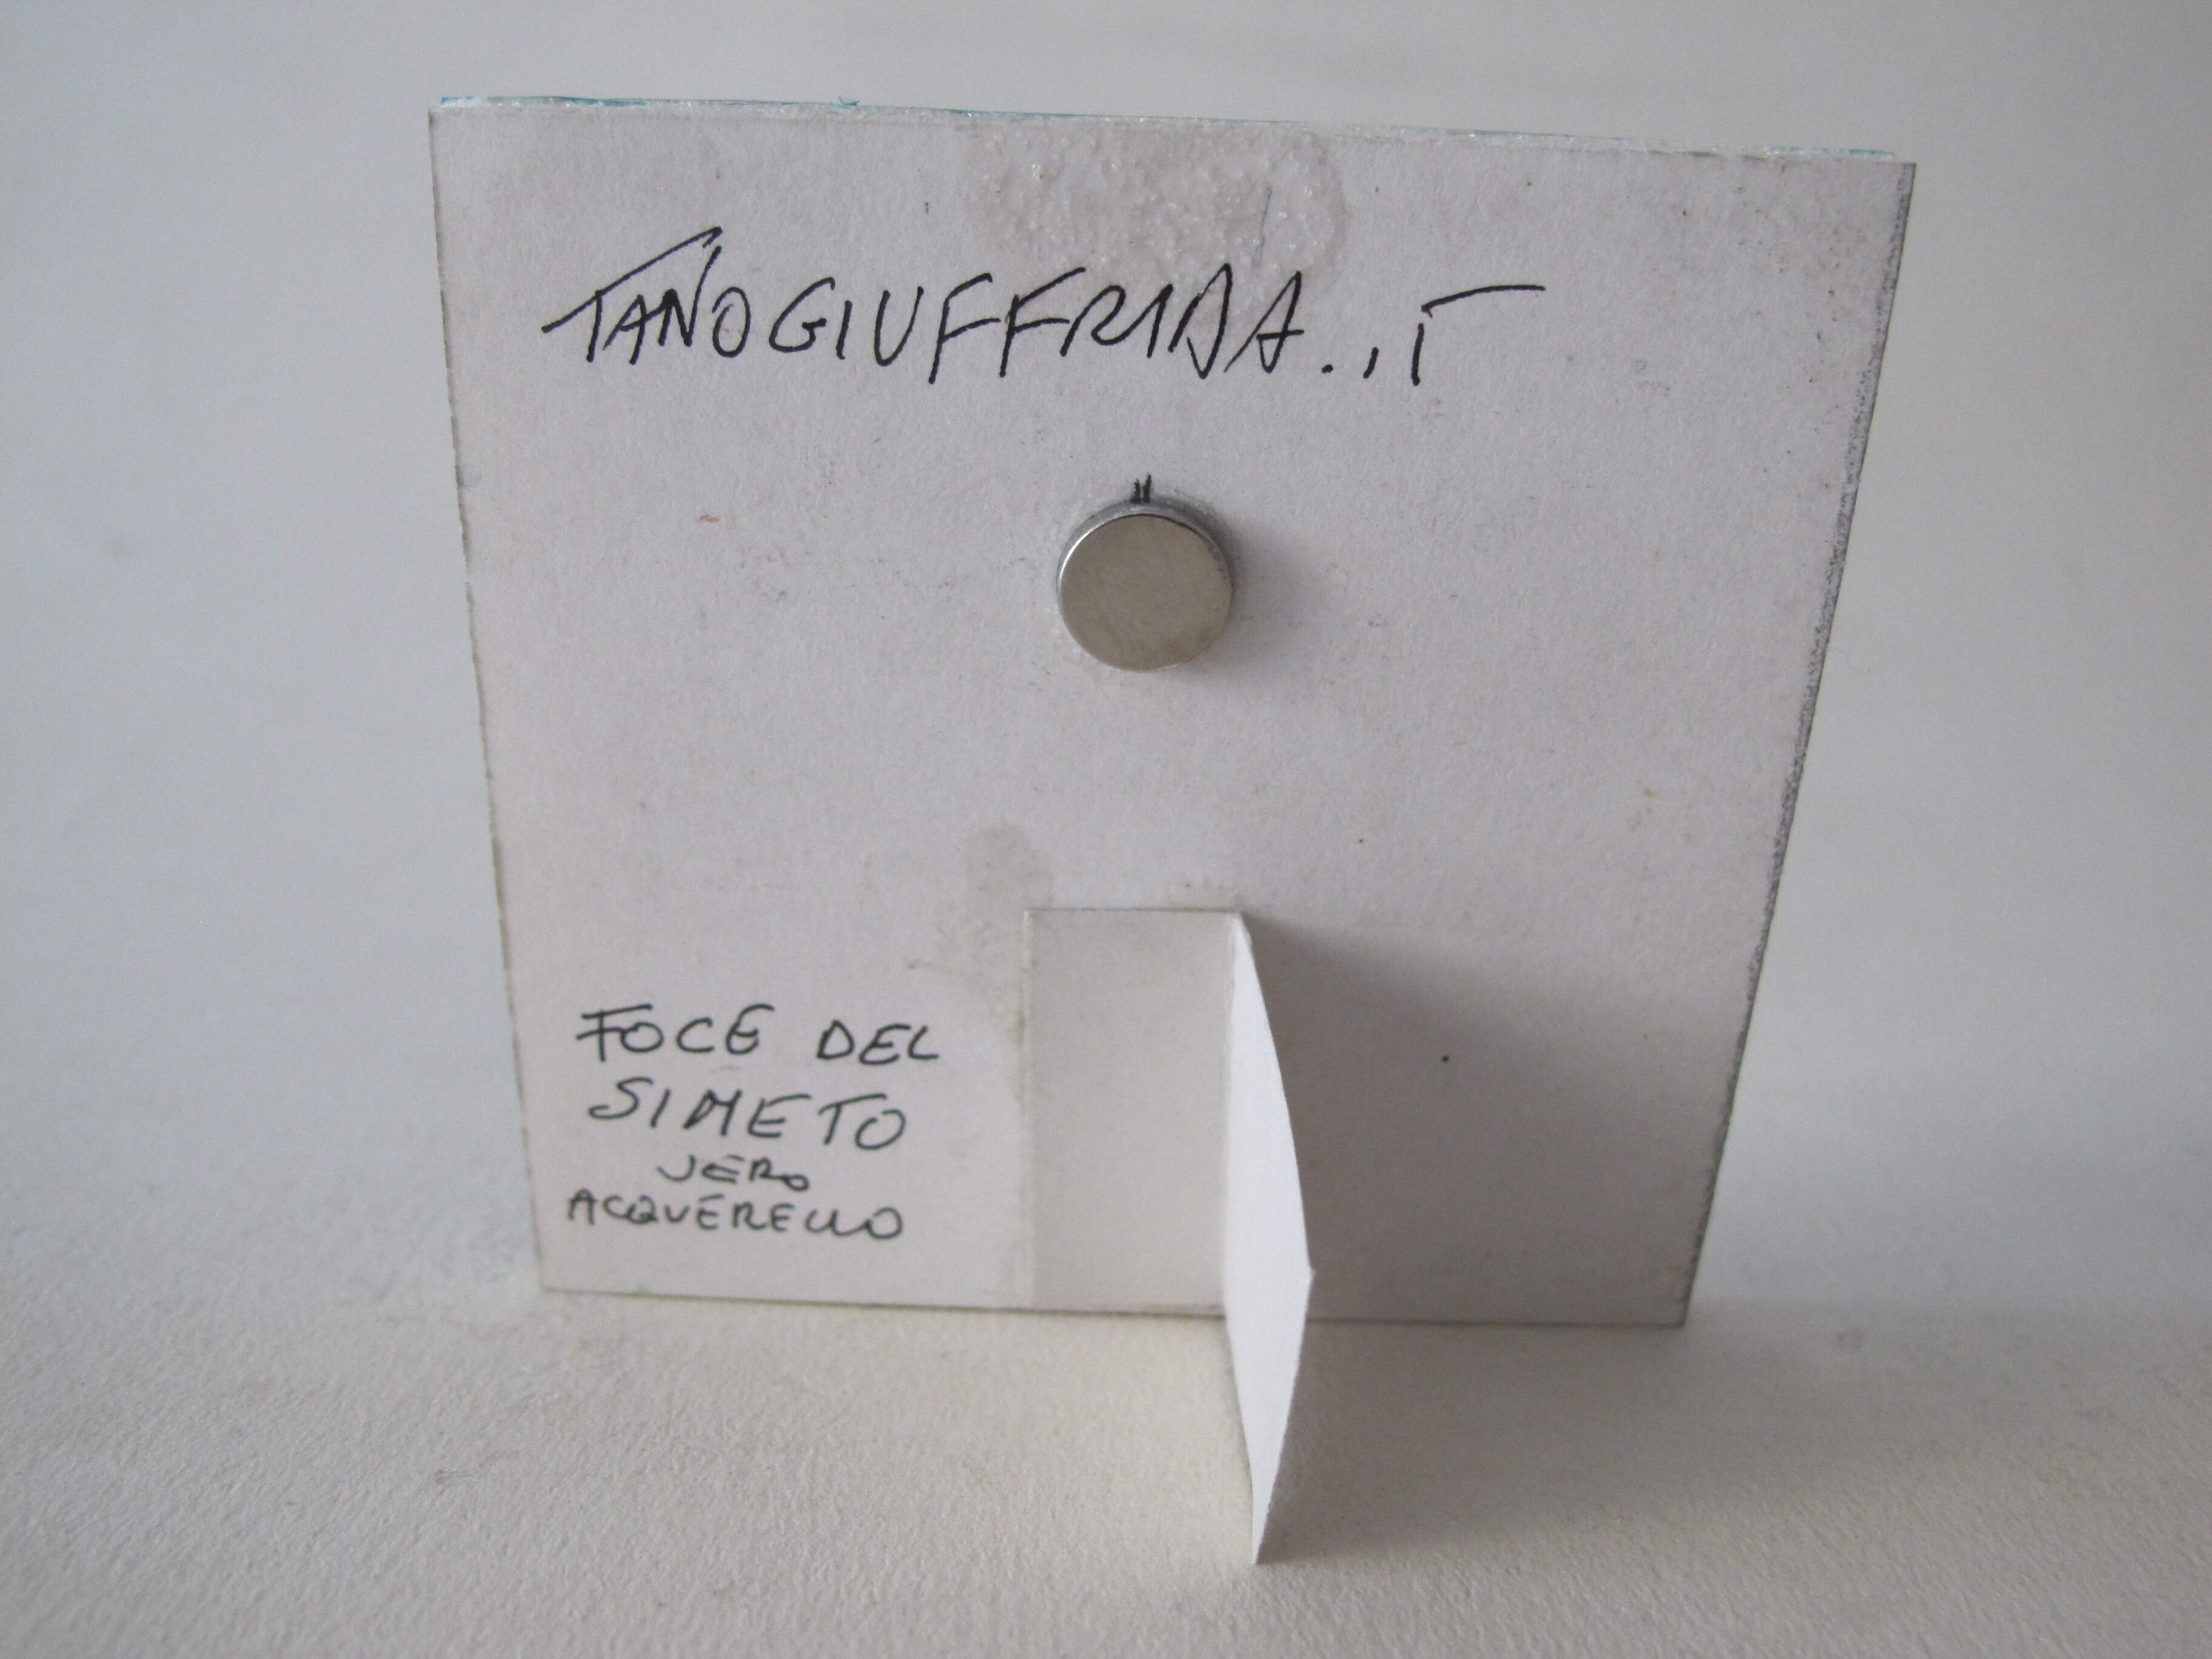 FOCE del SIMETO di Tano Giuffrida. Acquerello cm 8 x 8, magnete.